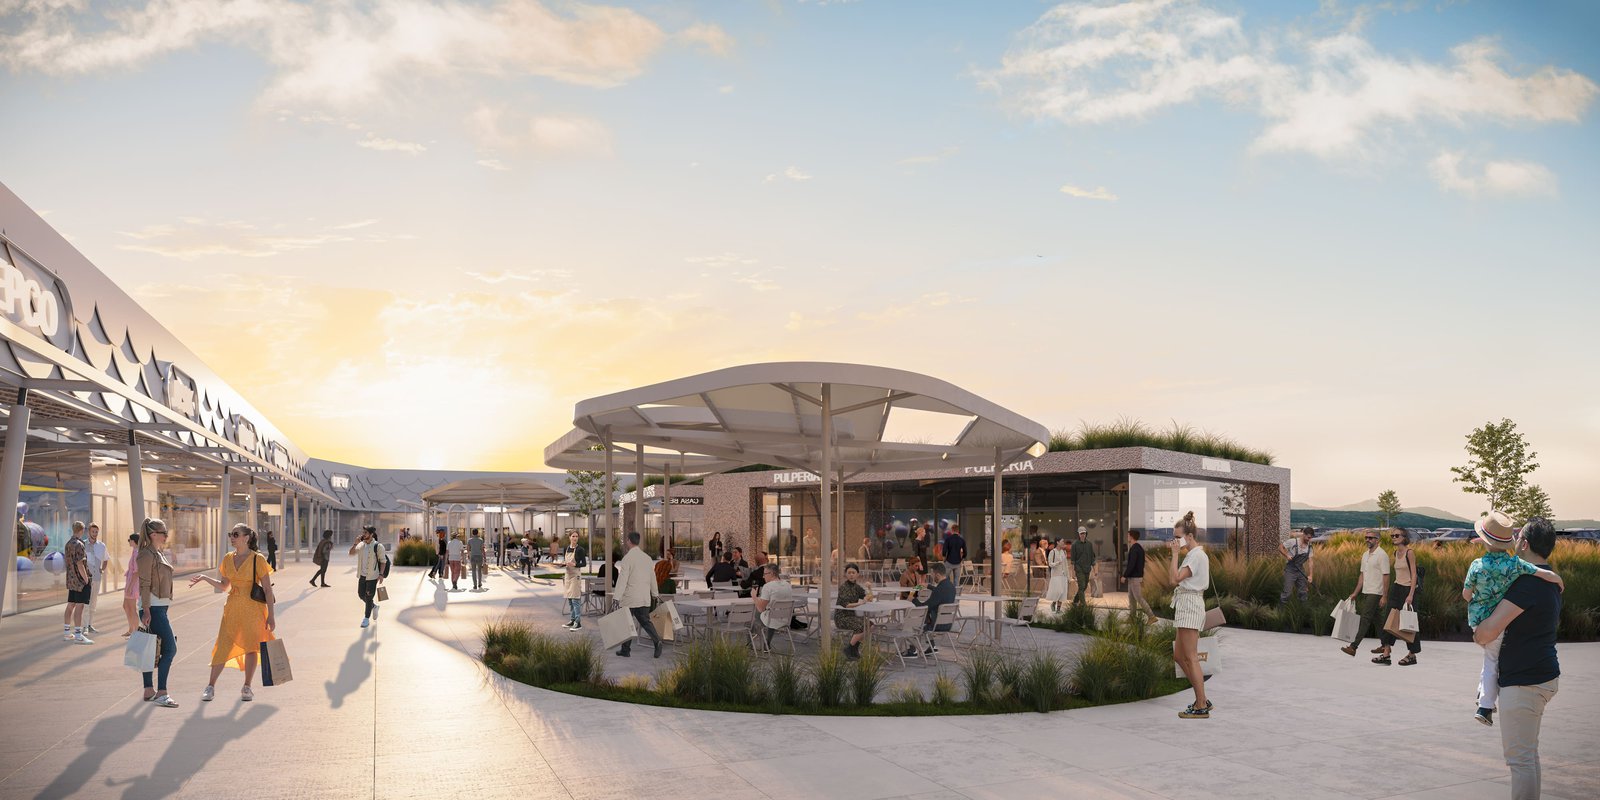 Vilanova de Arousa tendrá un nuevo parque comercial en 2025